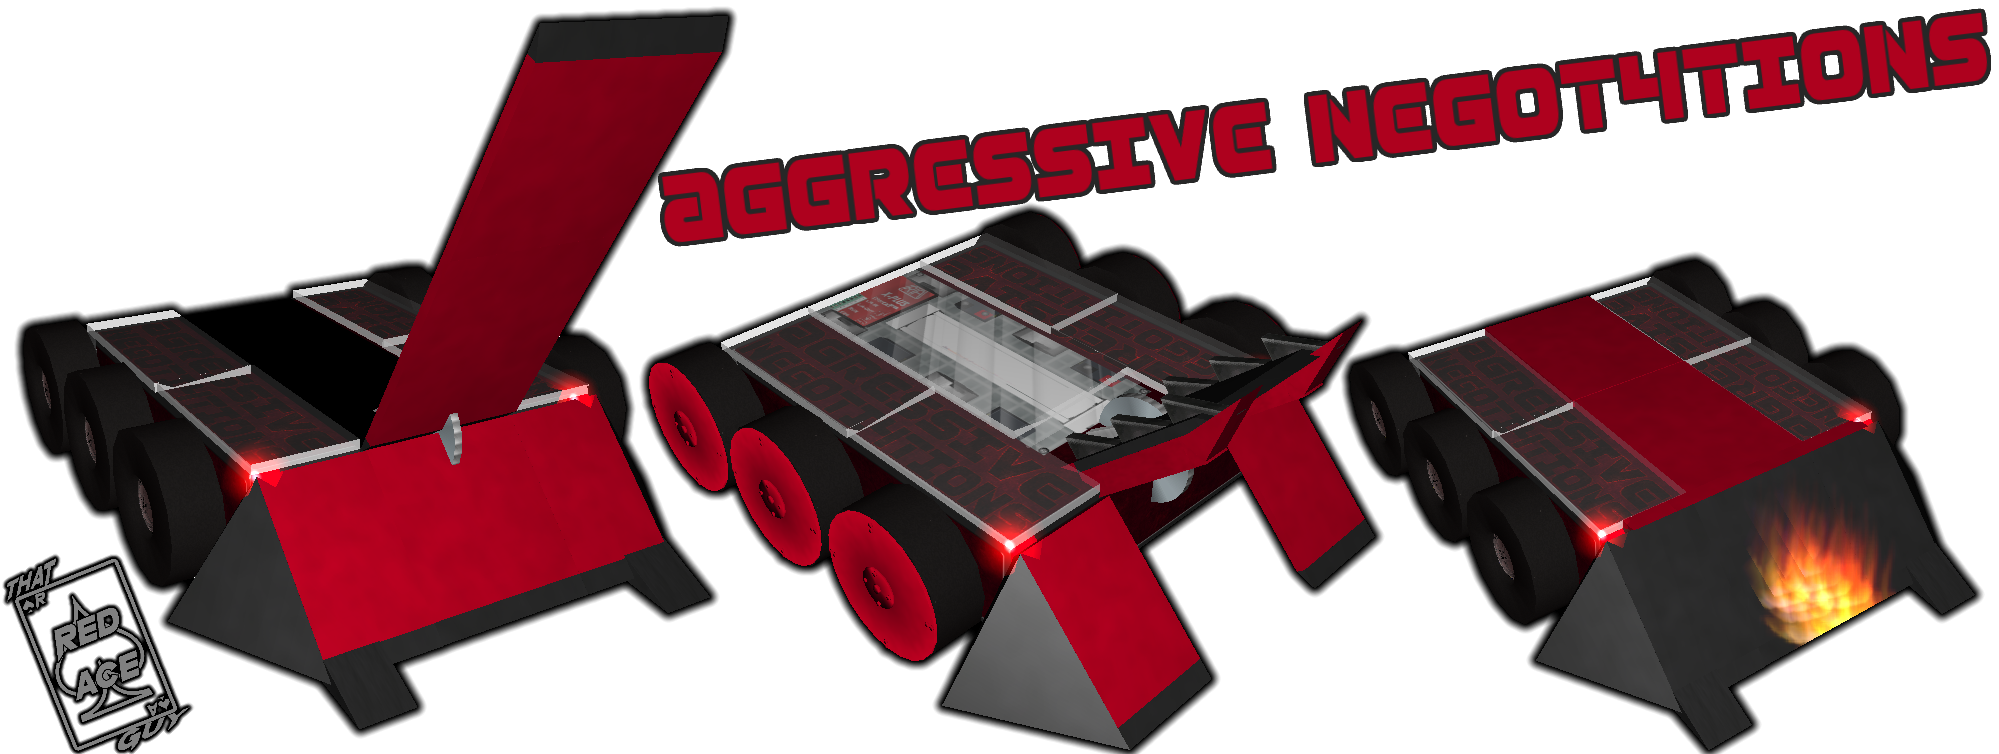 Aggressive_Negoti4tions_v2.png